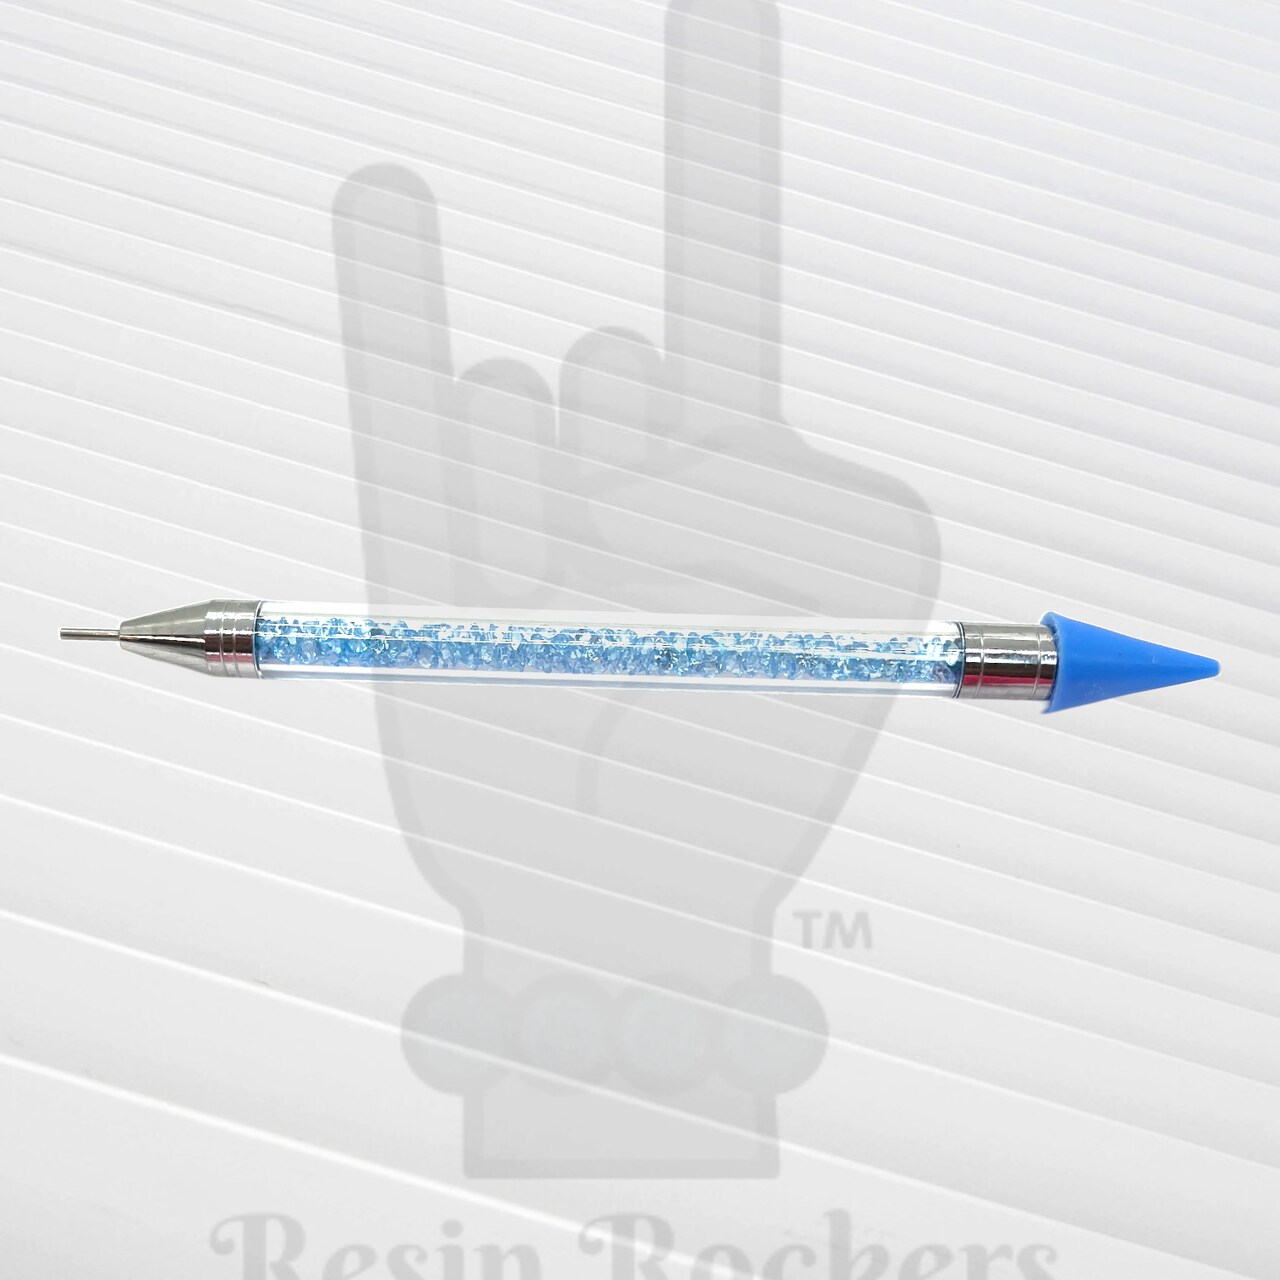 Wax Pencil Rhinestone Picker - Best tool for crystals - Art Beat Box